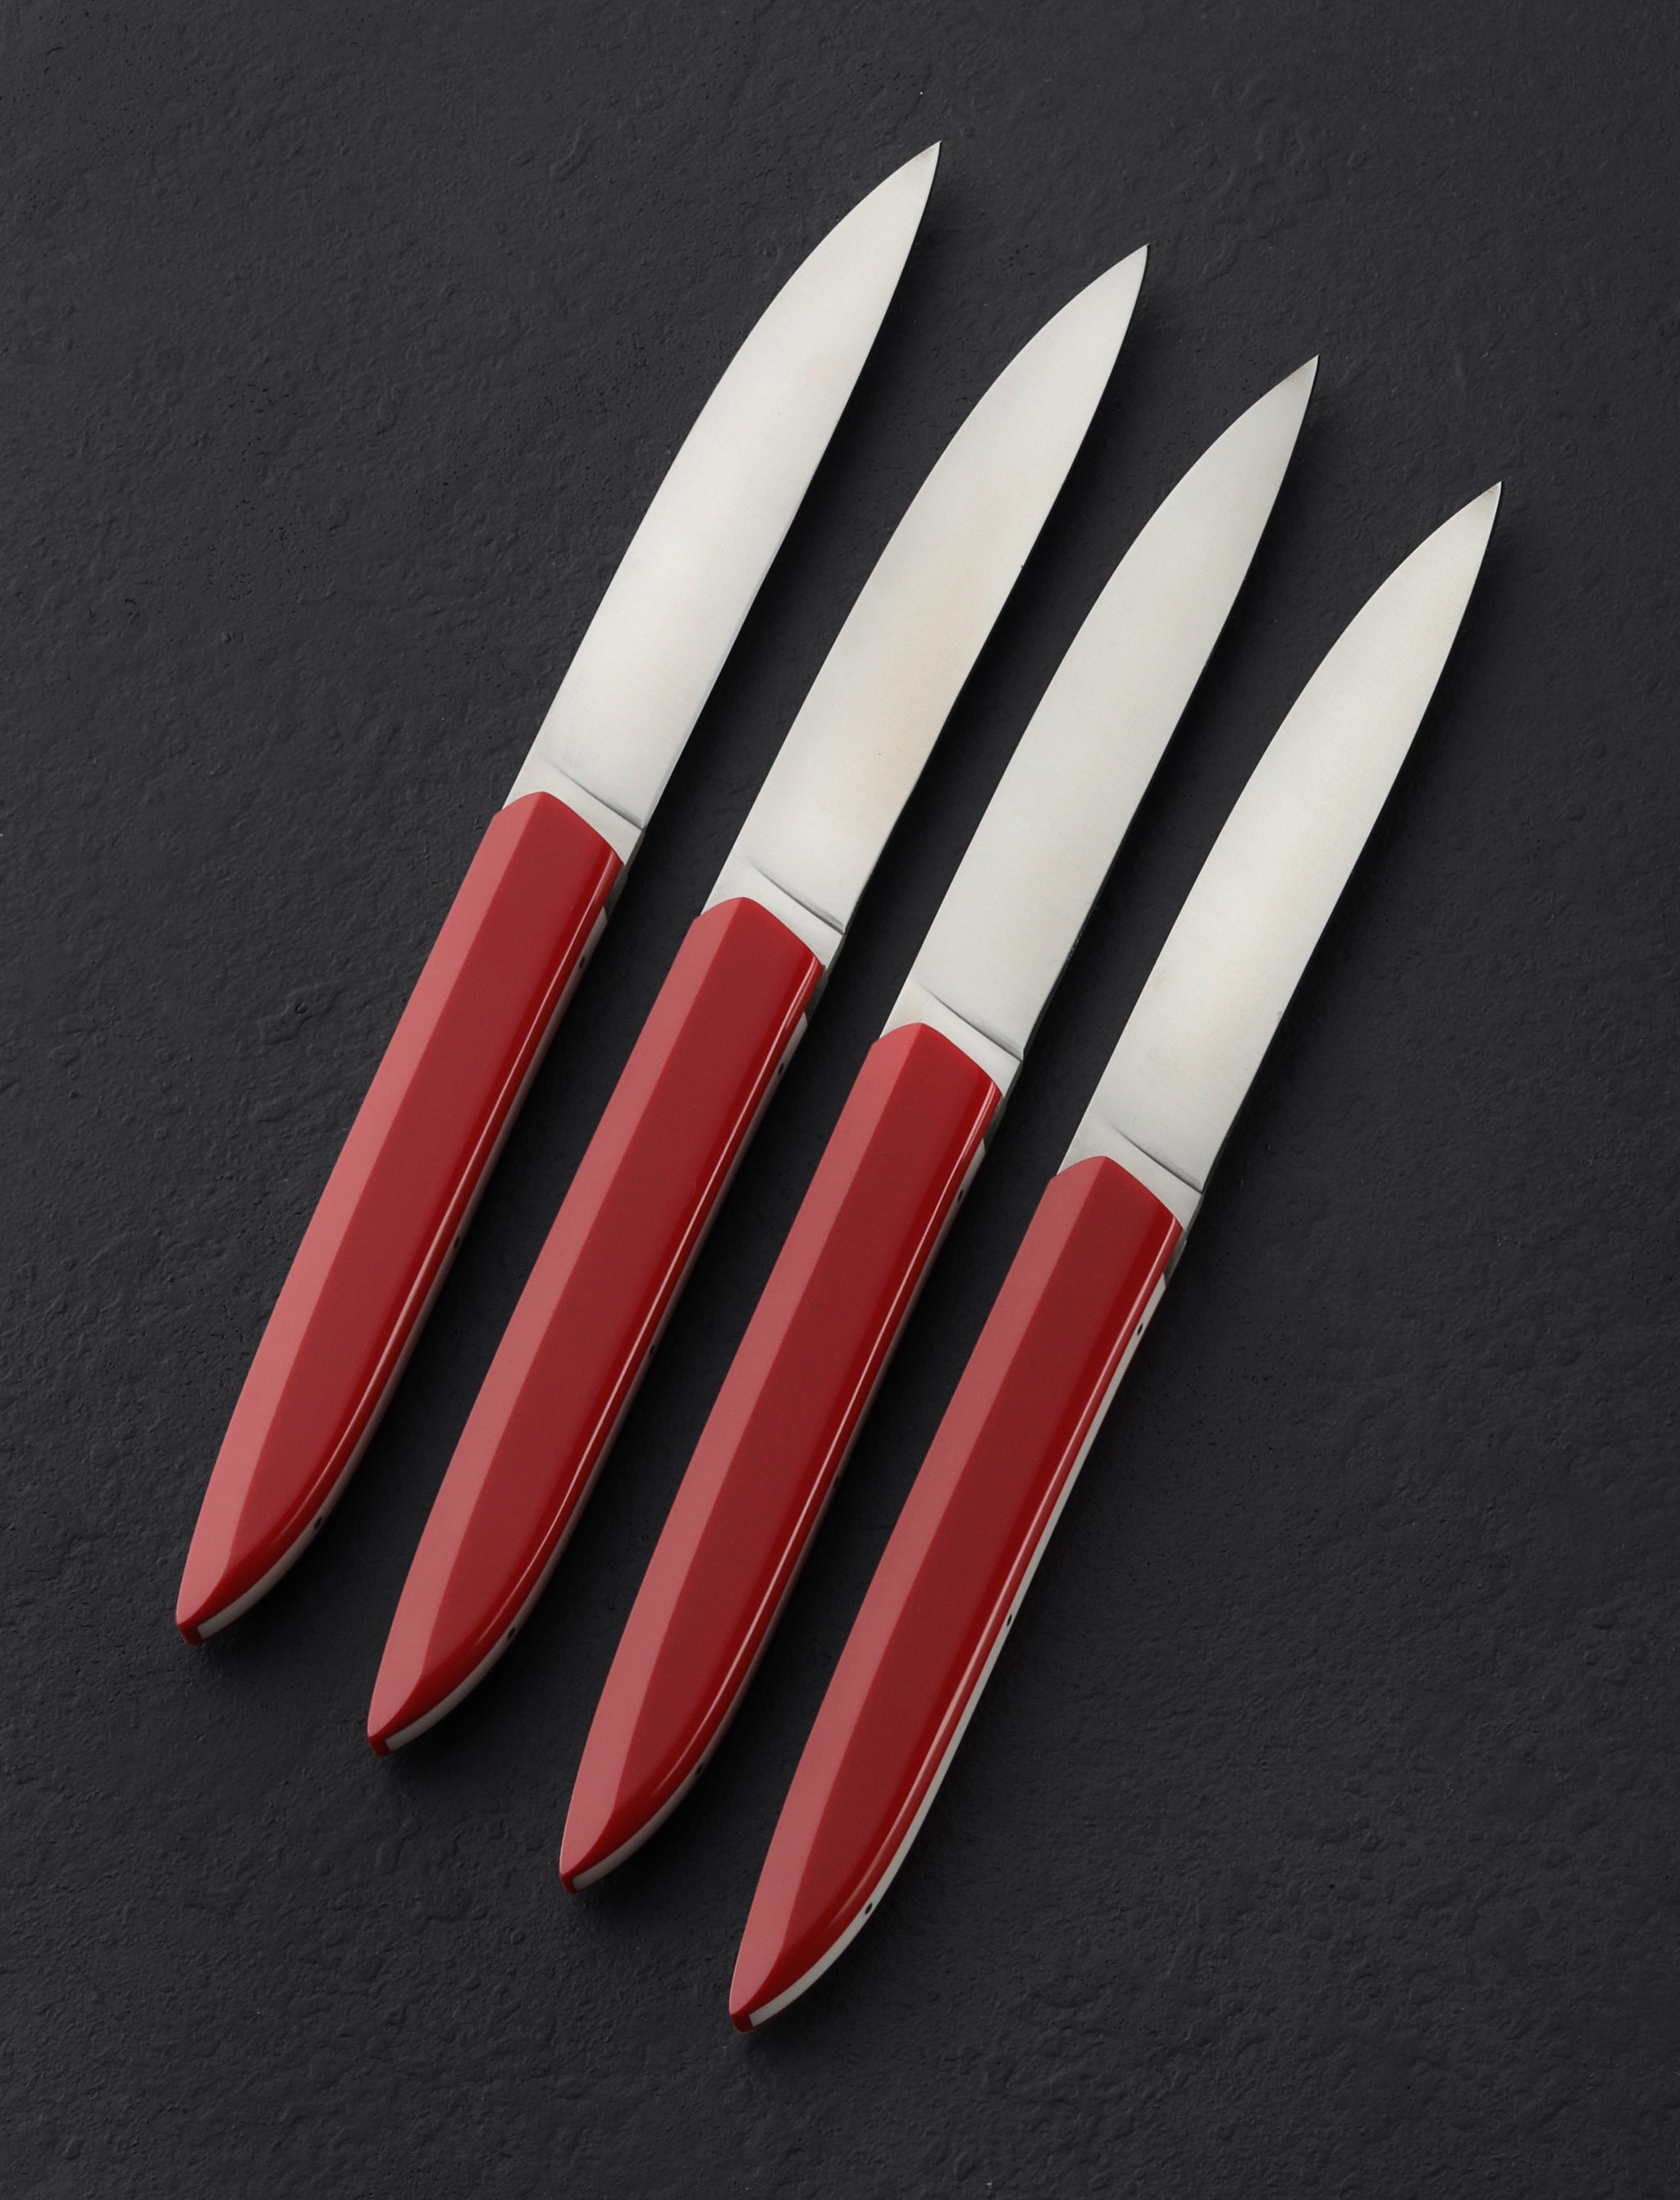 https://eatingtools.com/cdn/shop/files/table-knives-roland-lannier-france-royal-red-steak-knife-set-43020420546835.jpg?v=1693338864&width=2048